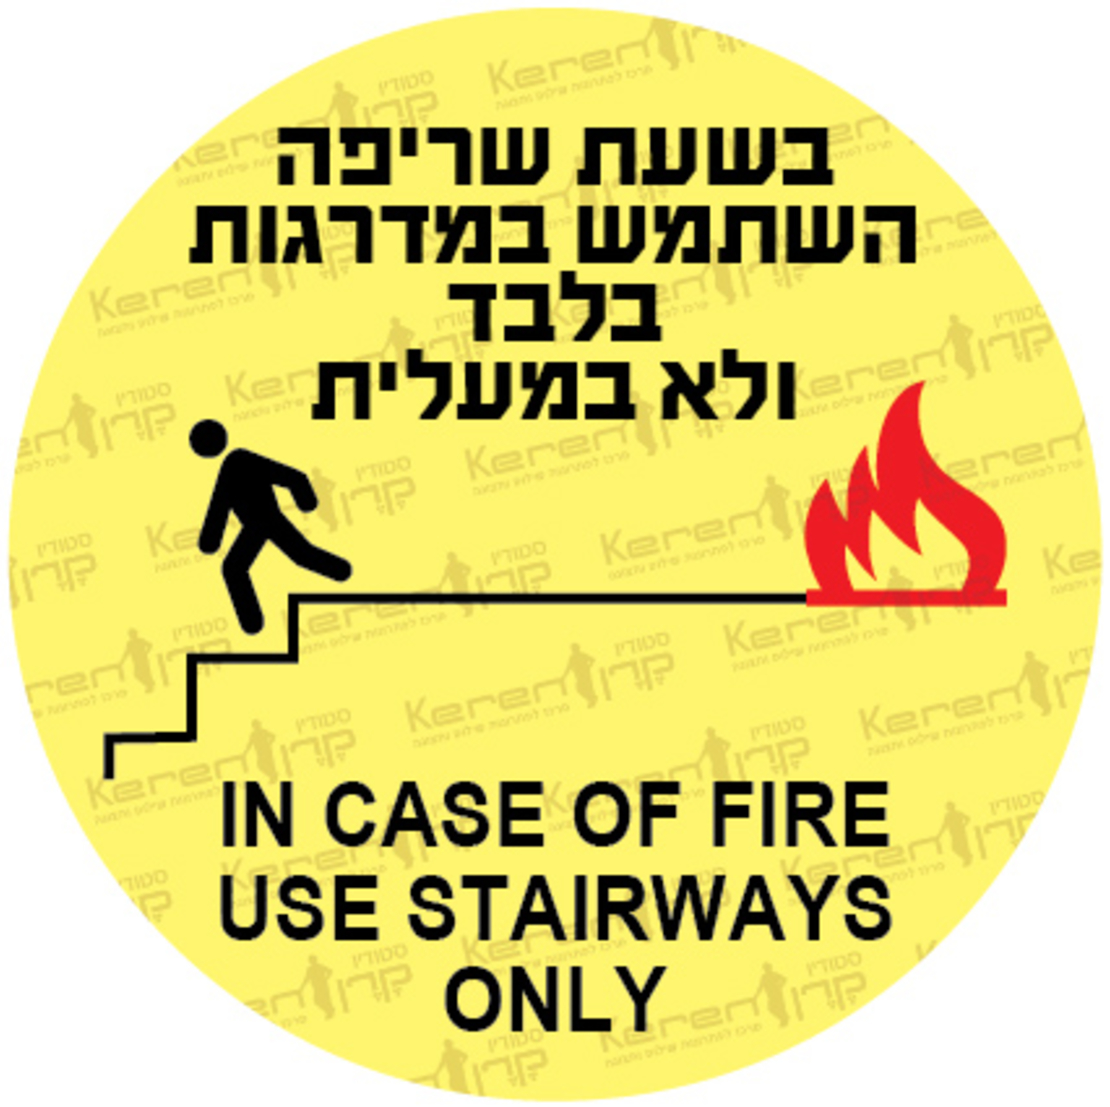 בשעת שריפה השתמש במדרגות בלבד, לא במעלית